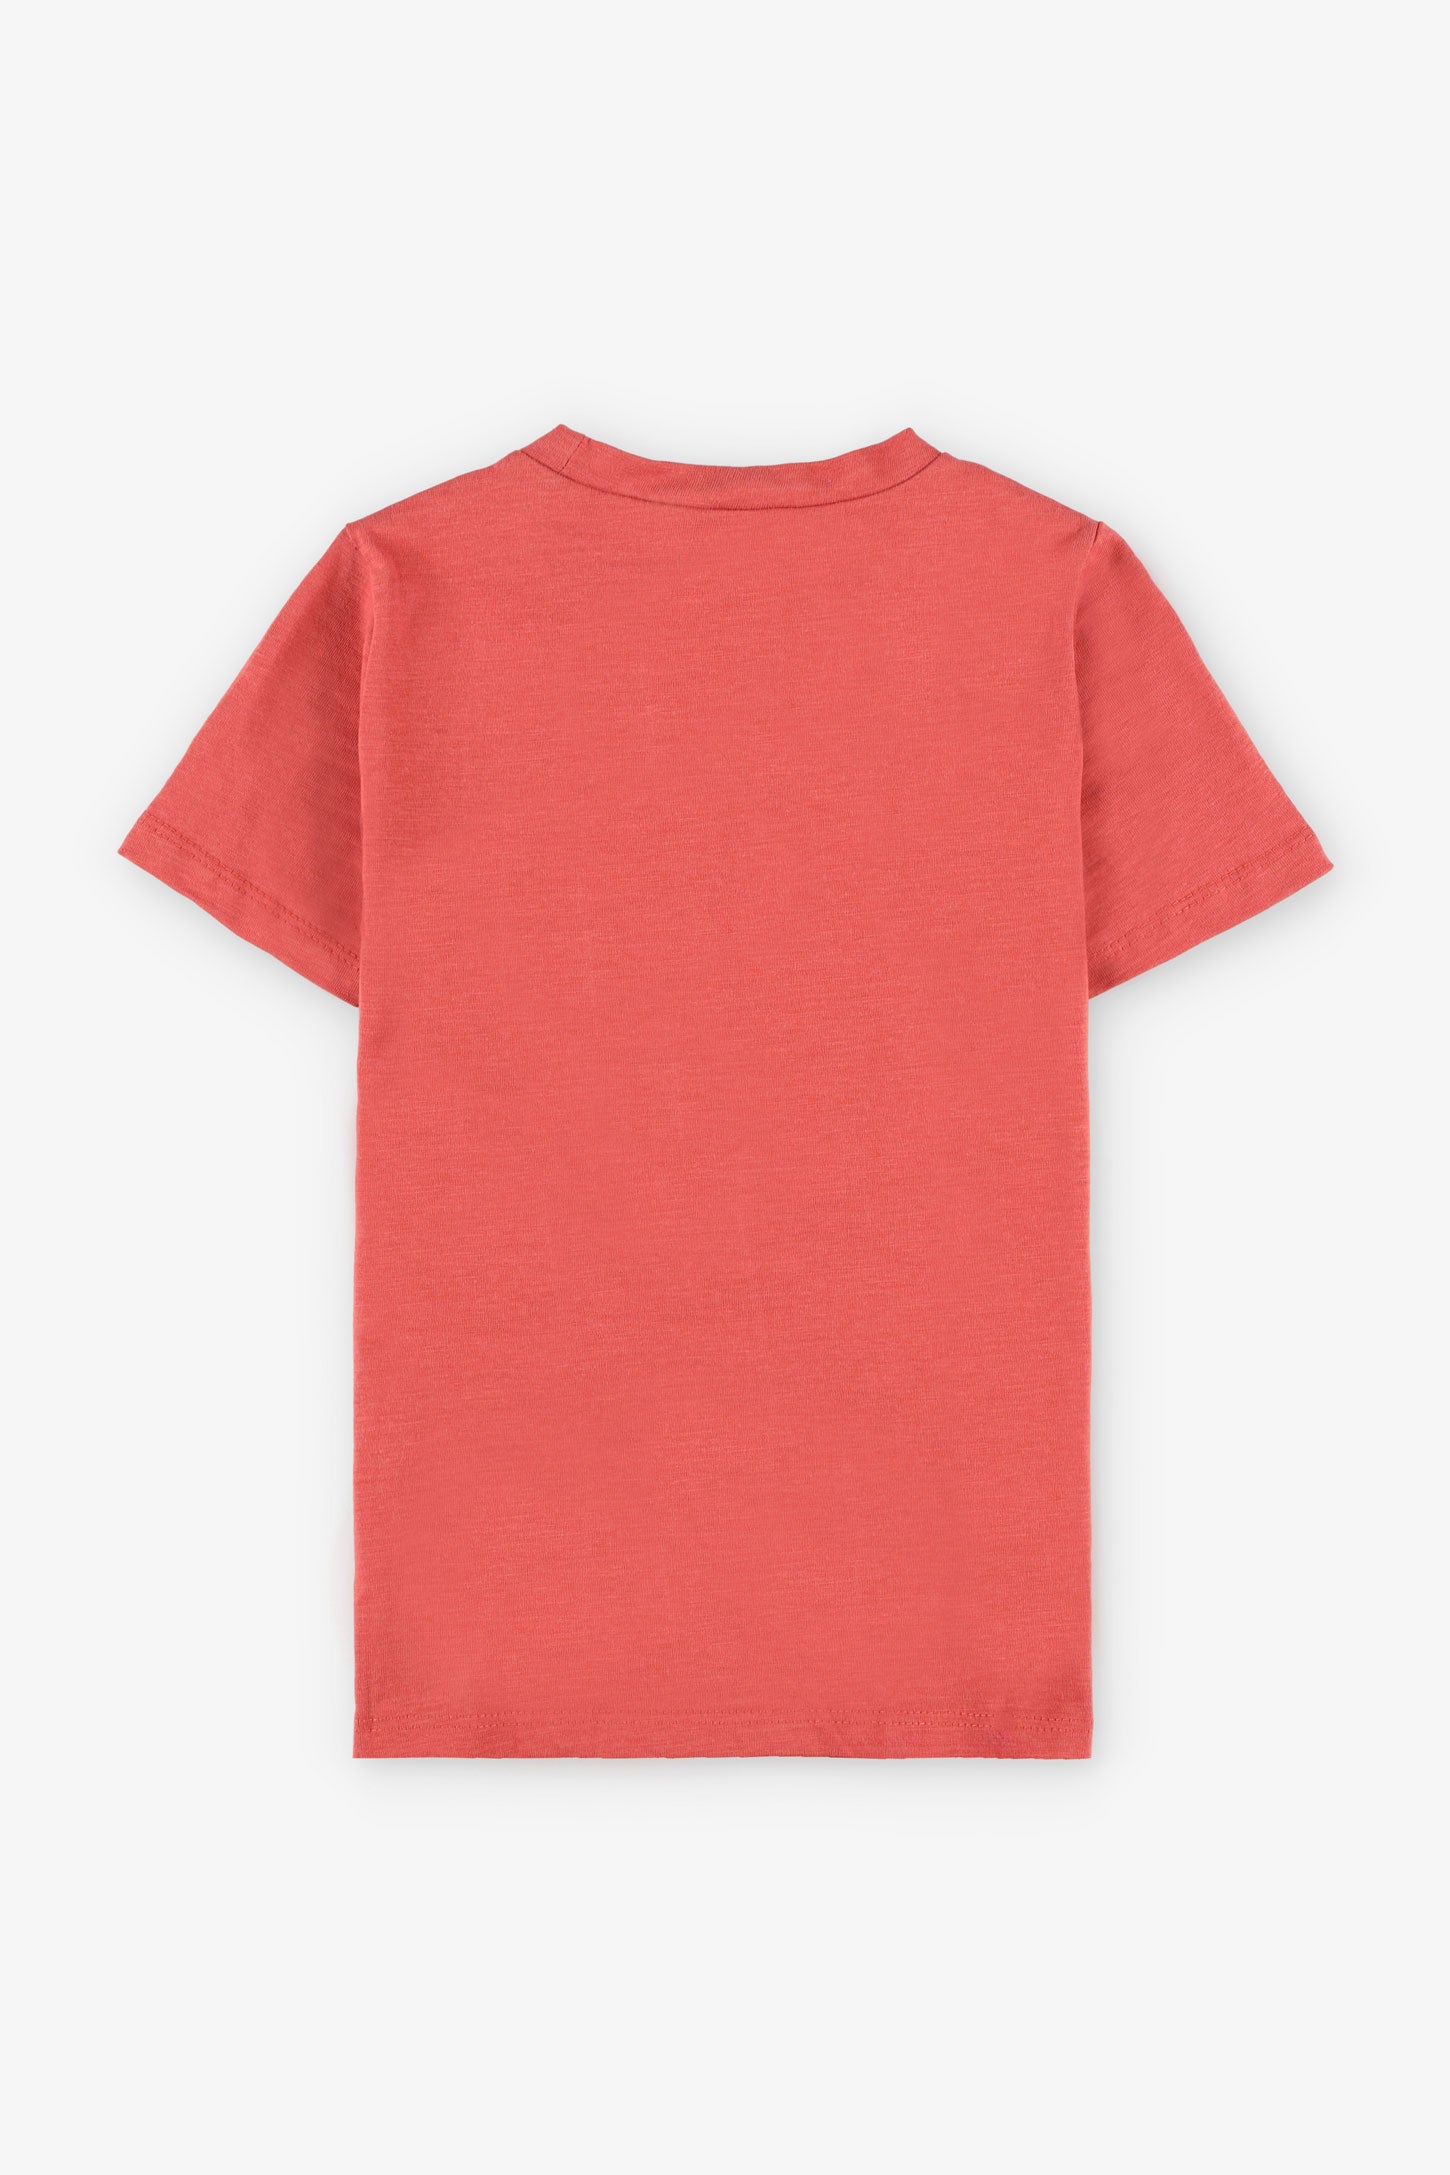 T-shirt col rond imprimé, 2/20$ - Enfant garçon && ROUGE